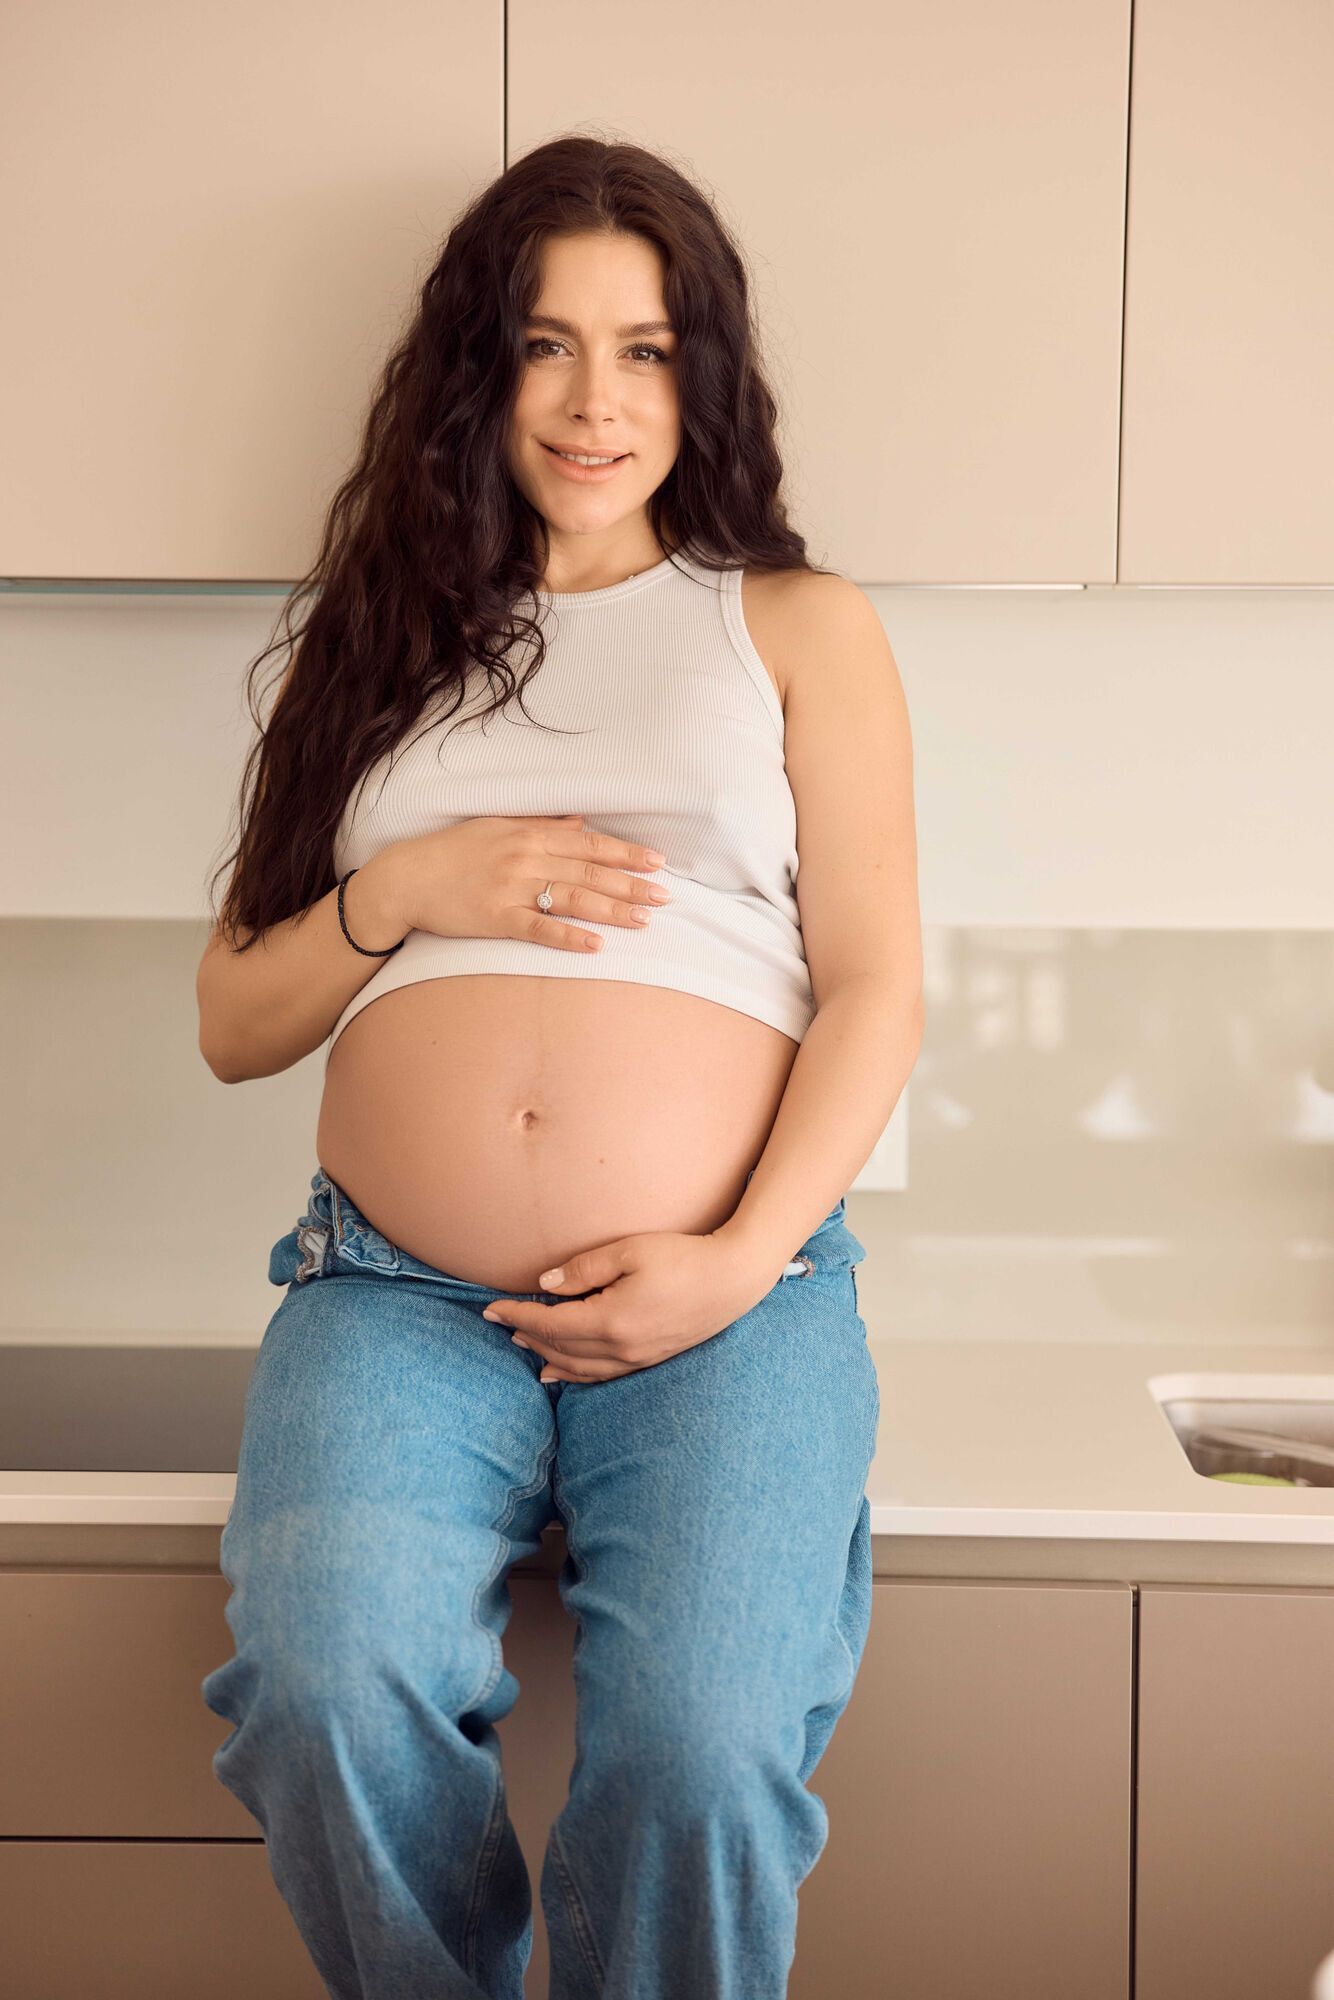 Іванна Онуфрійчук показала себе на останньому місяці вагітності та пояснила, чому не народжуватиме в Україні